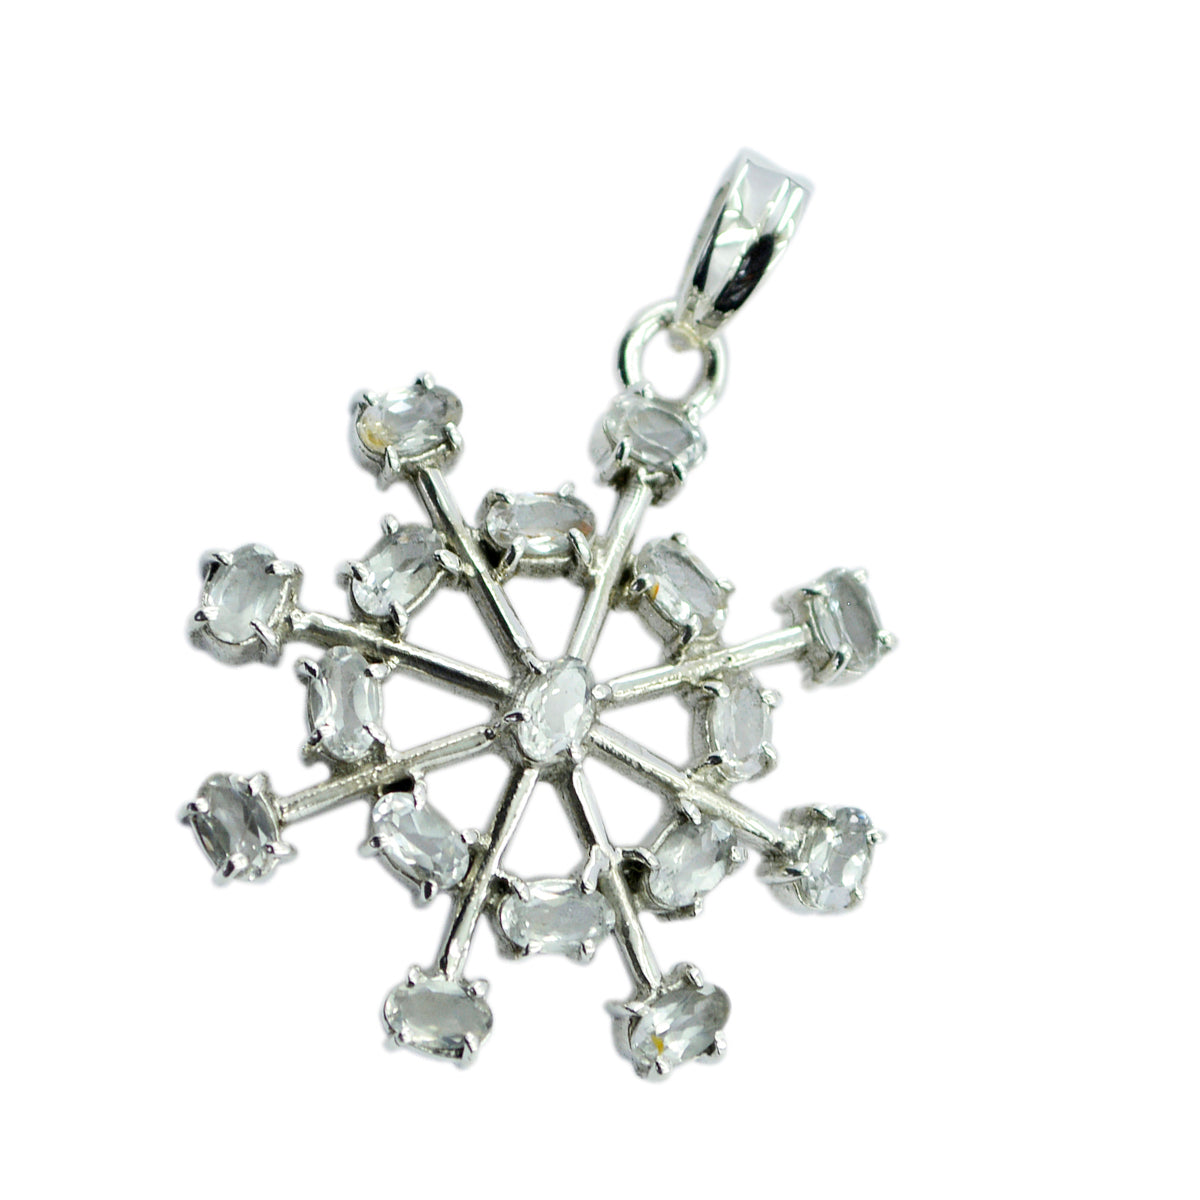 Подвеска riyo easy с драгоценными камнями овальной огранки из белого кристалла кварца из стерлингового серебра 1028 пробы подарок для подруги